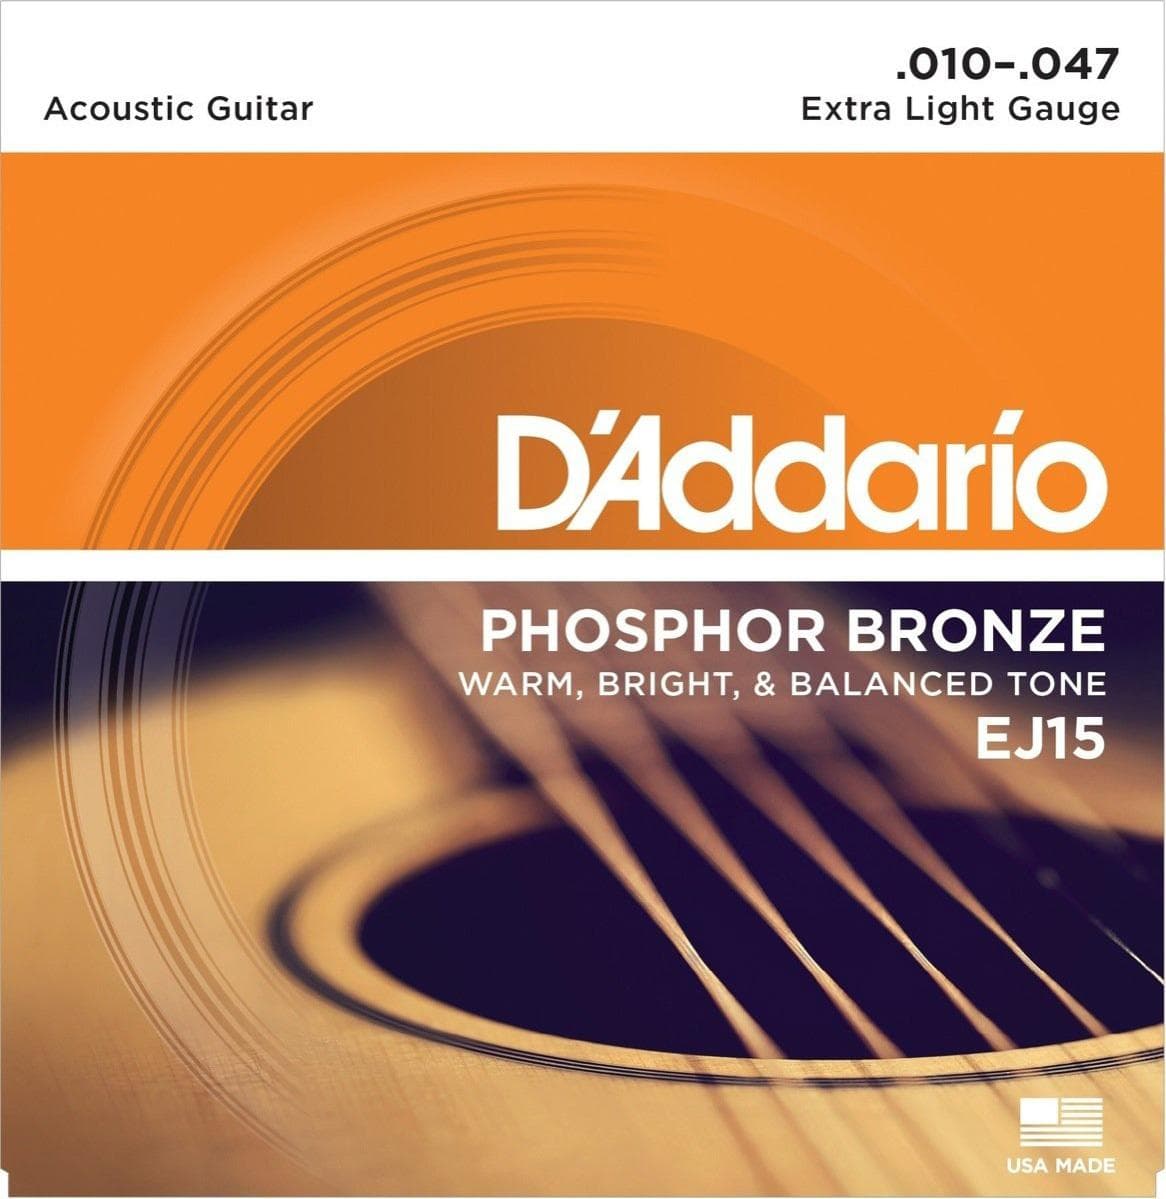 D'Addario Phosphor Bronze Guitar Set Extra Light